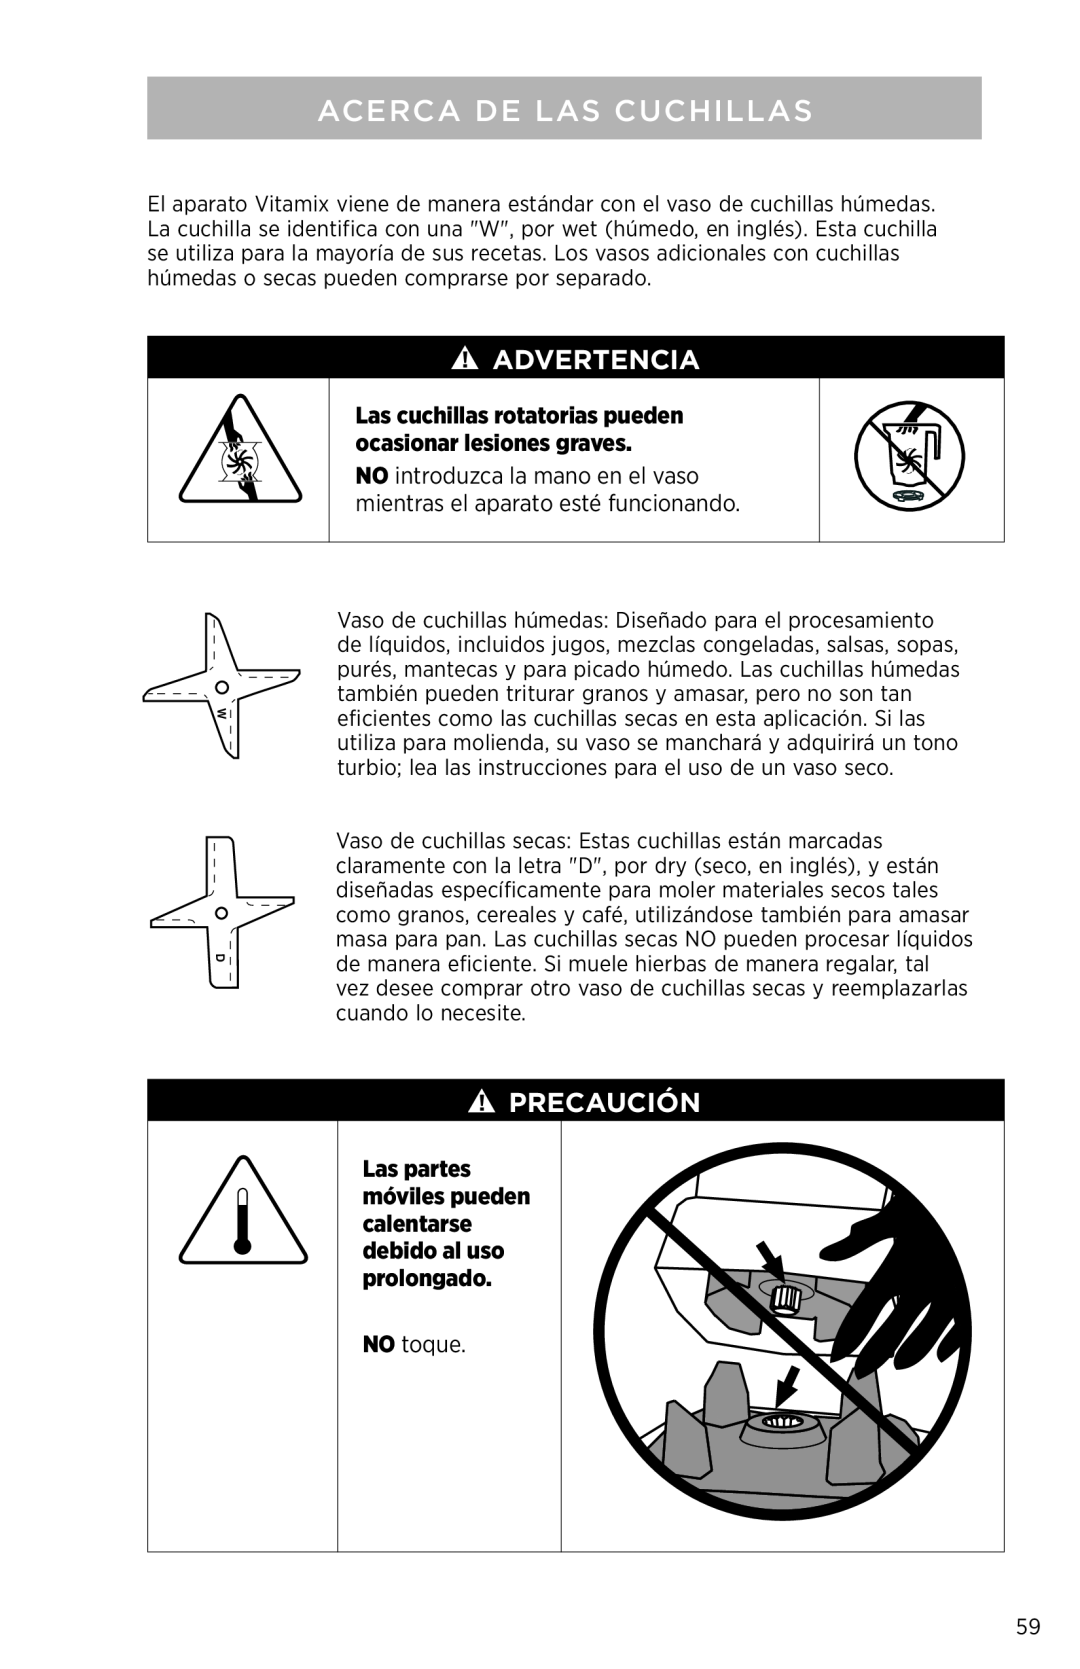 Vita-Mix PROFESSIONAL SERIES 750 manual Acerca De Las Cuchillas, Precauciónution, NO toque, Advertencia 